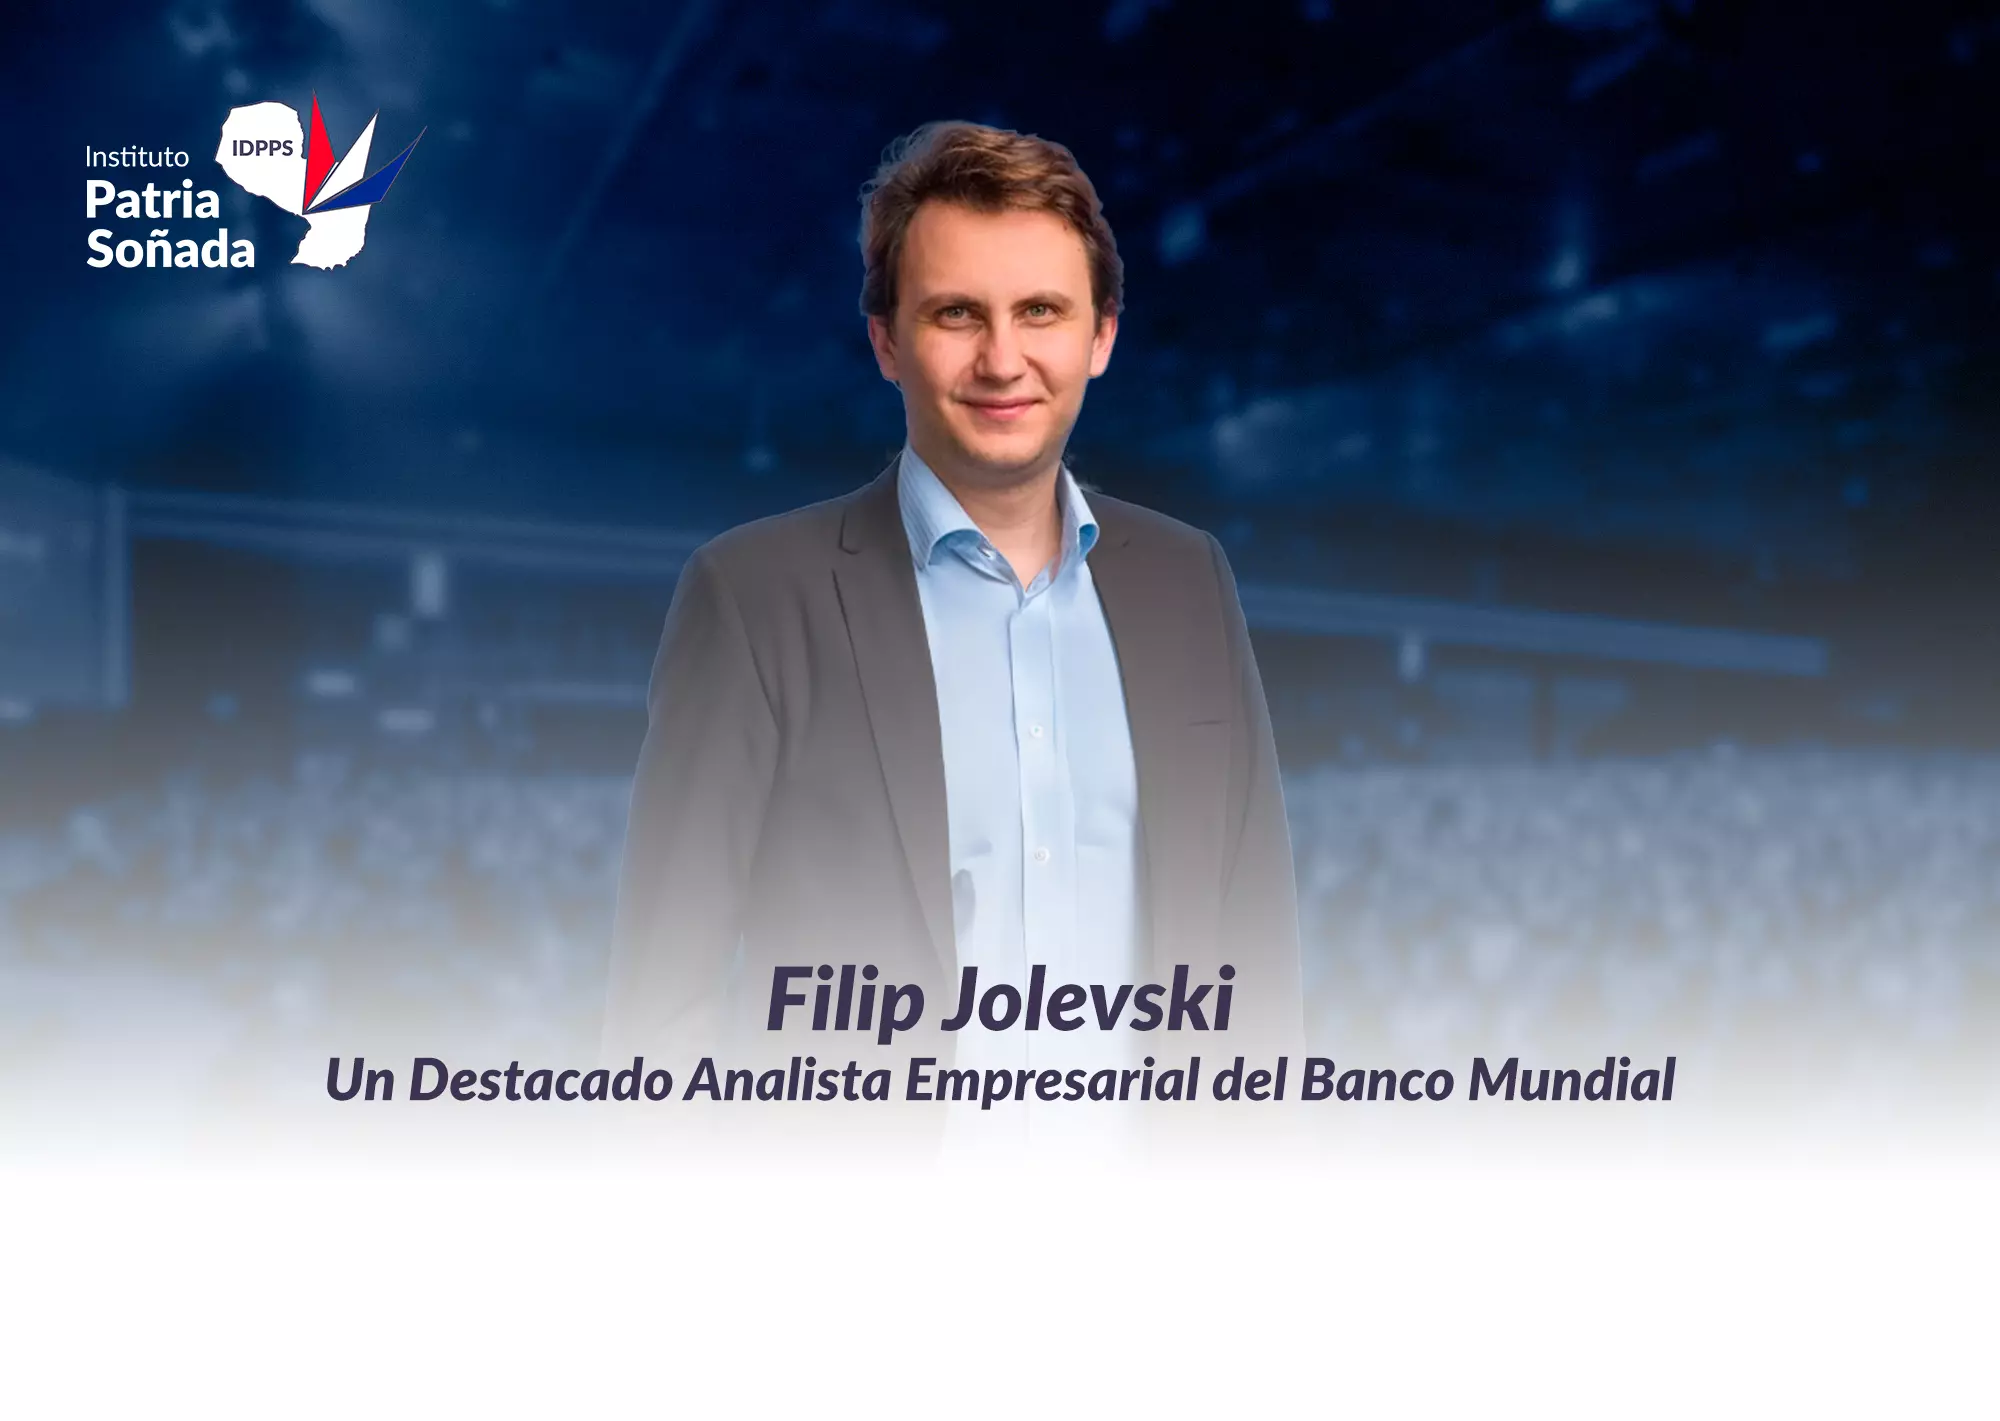 Filip Jolevski: Analista Empresarial del Banco Mundial y Su Importancia para Paraguay